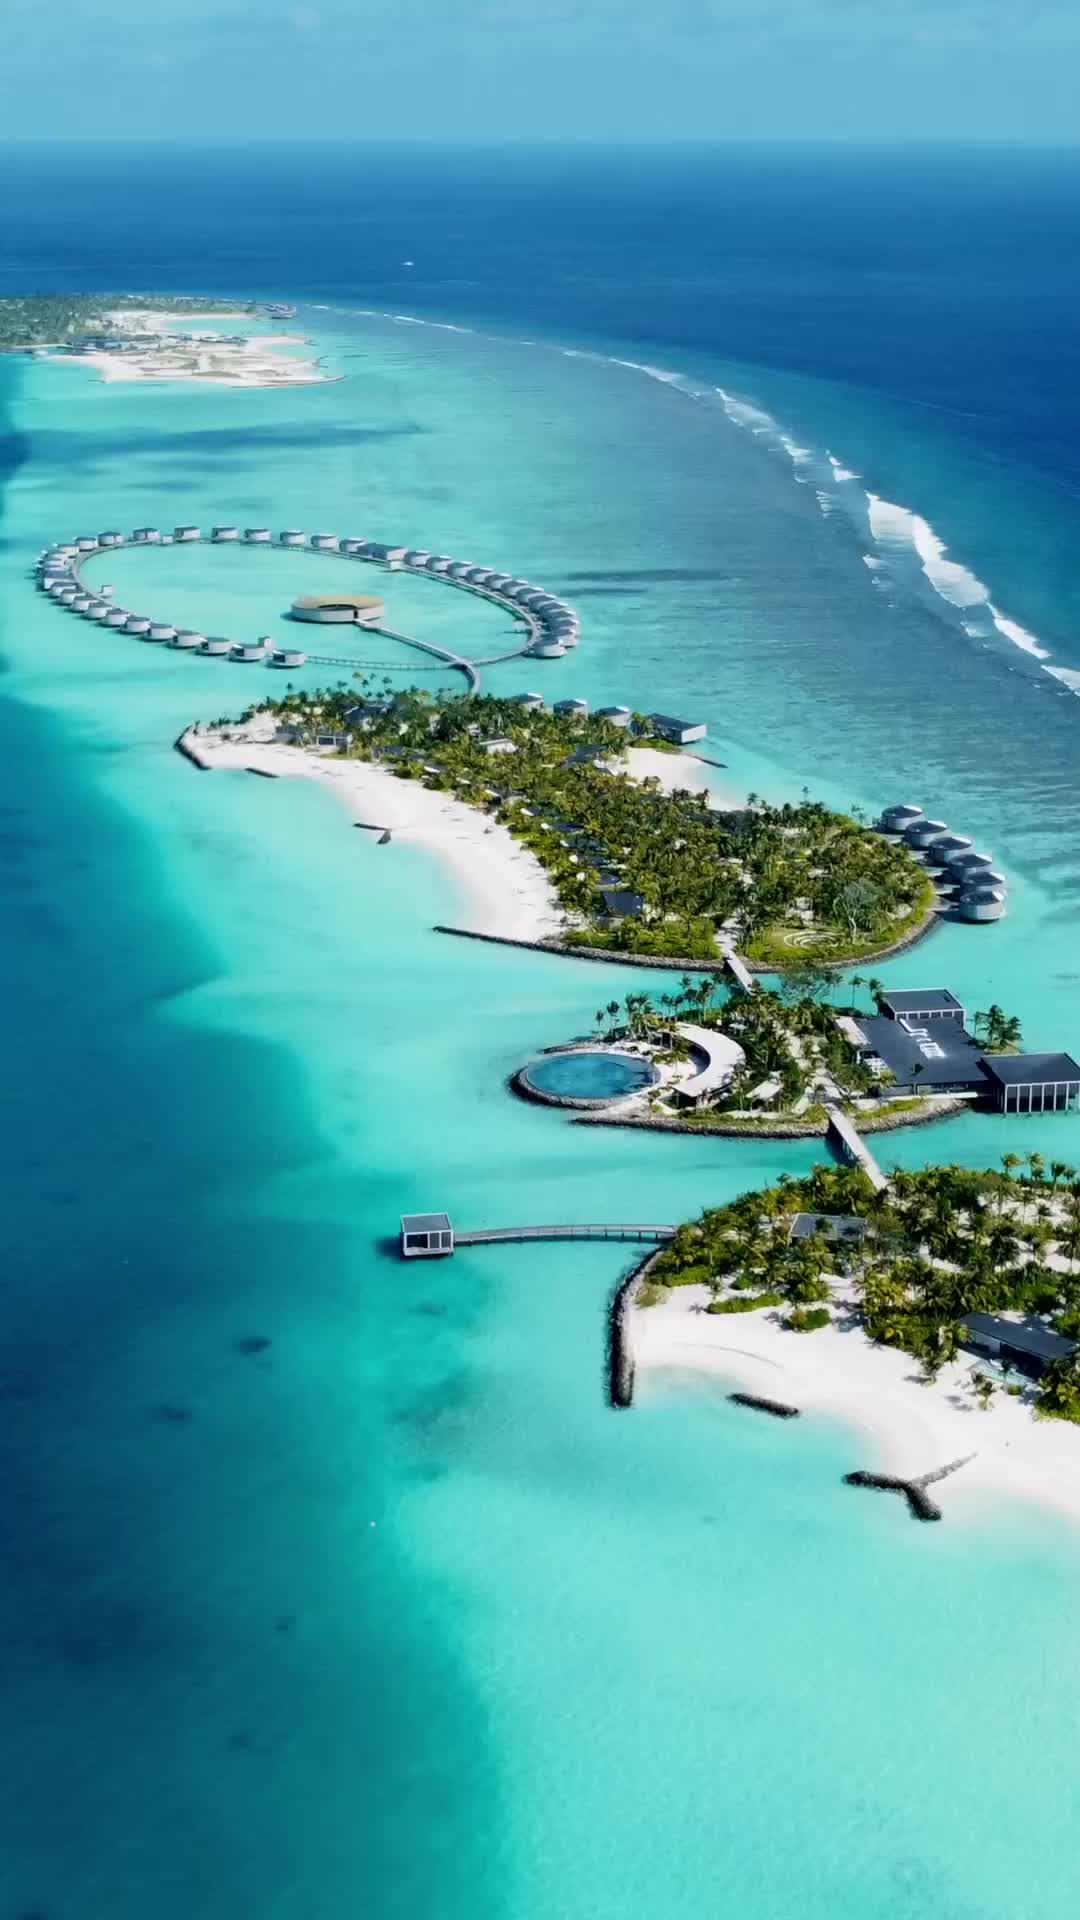 Dream travel series : The Ritz-Carlton Maldives, Fari Islands
• • • • •
🎥 ©️ Prod. #TomClaeren
#RitzCarlton #Travel #Maldives